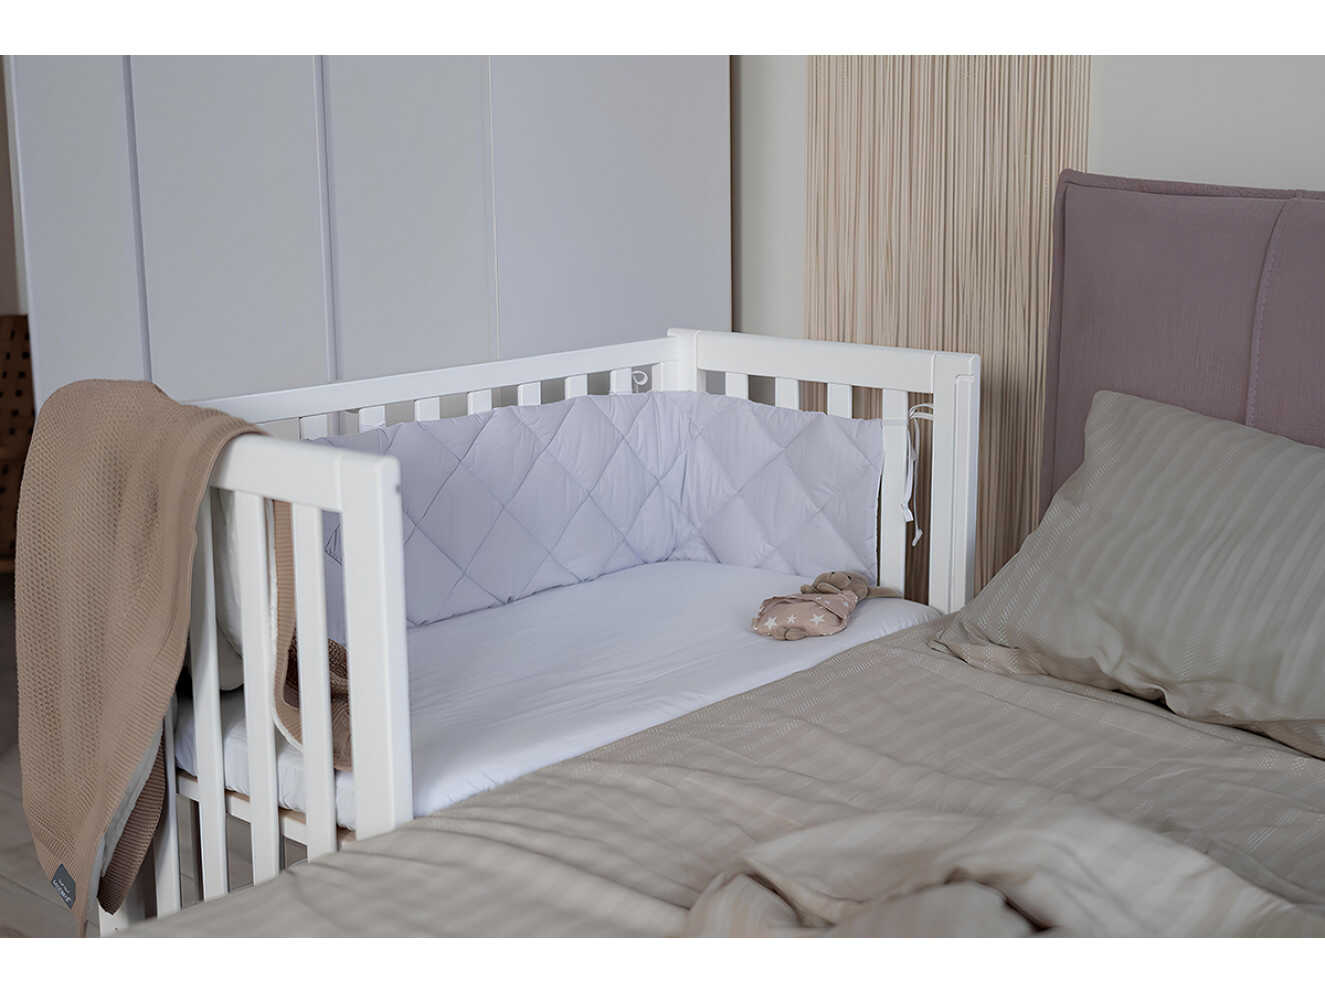 Ліжечко дитяче Верес приставне Лдп13 без ящика (Білий)